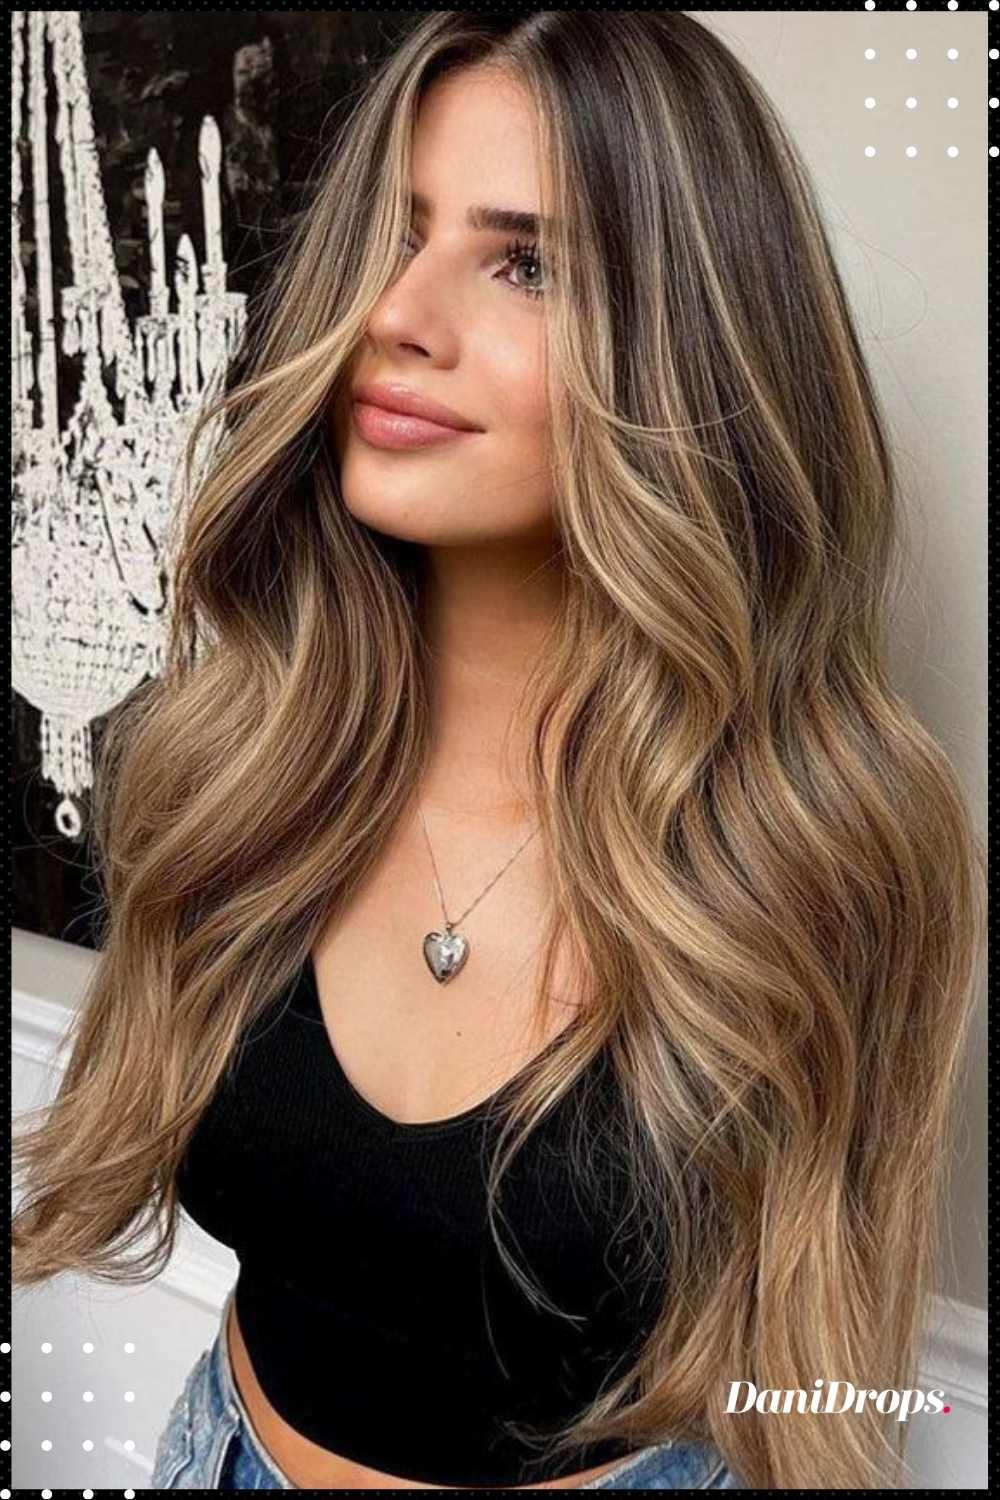 Illuminated Morena Hair - Trending on social networks